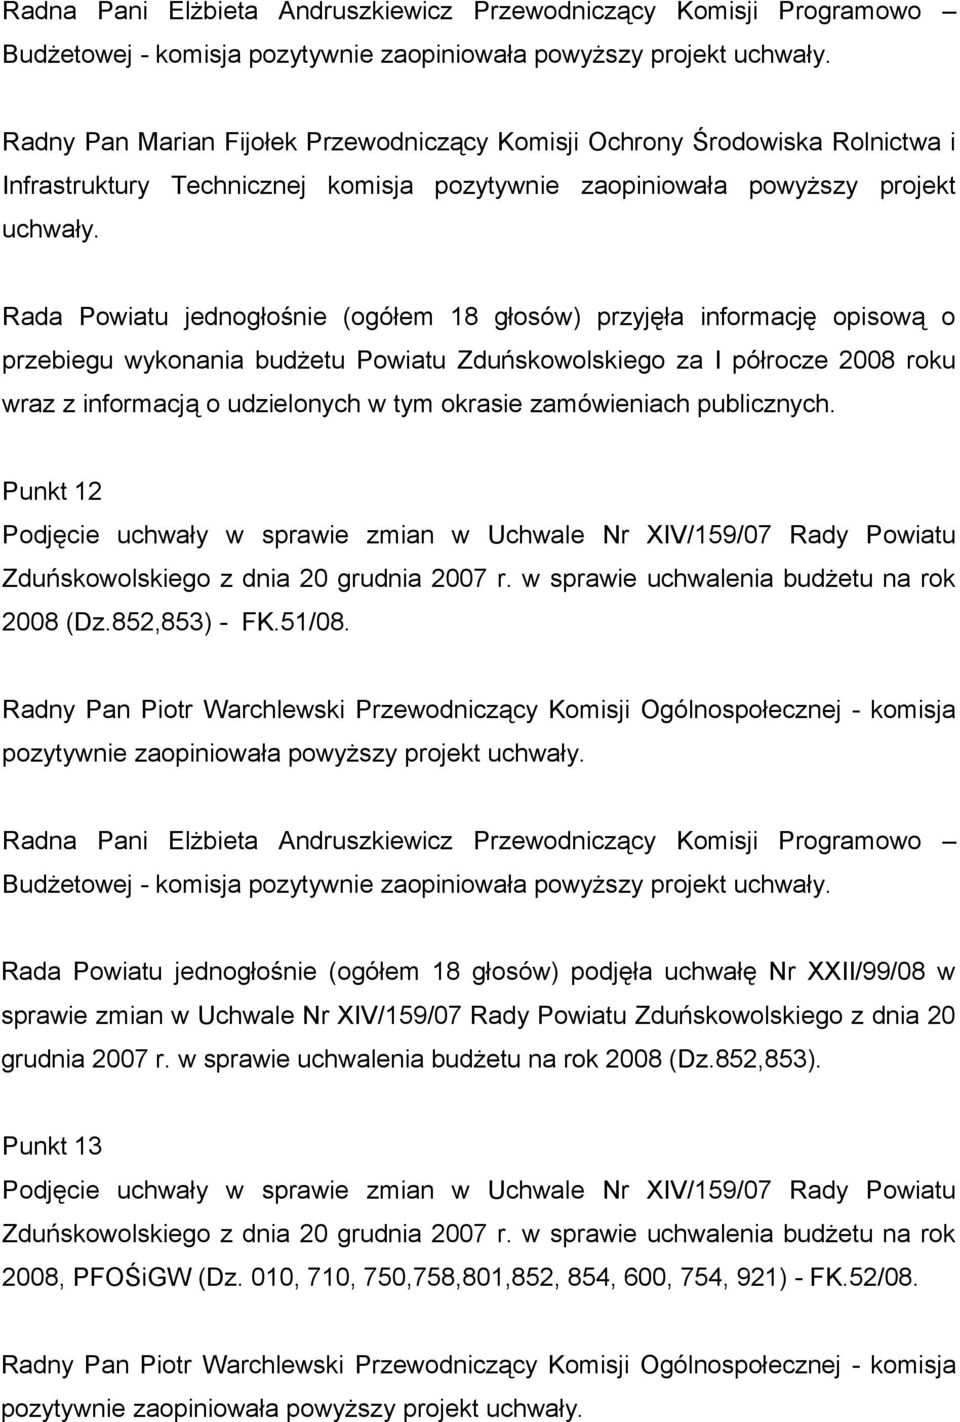 Rada Powiatu jednogłośnie (ogółem 18 głosów) przyjęła informację opisową o przebiegu wykonania budżetu Powiatu Zduńskowolskiego za I półrocze 2008 roku wraz z informacją o udzielonych w tym okrasie